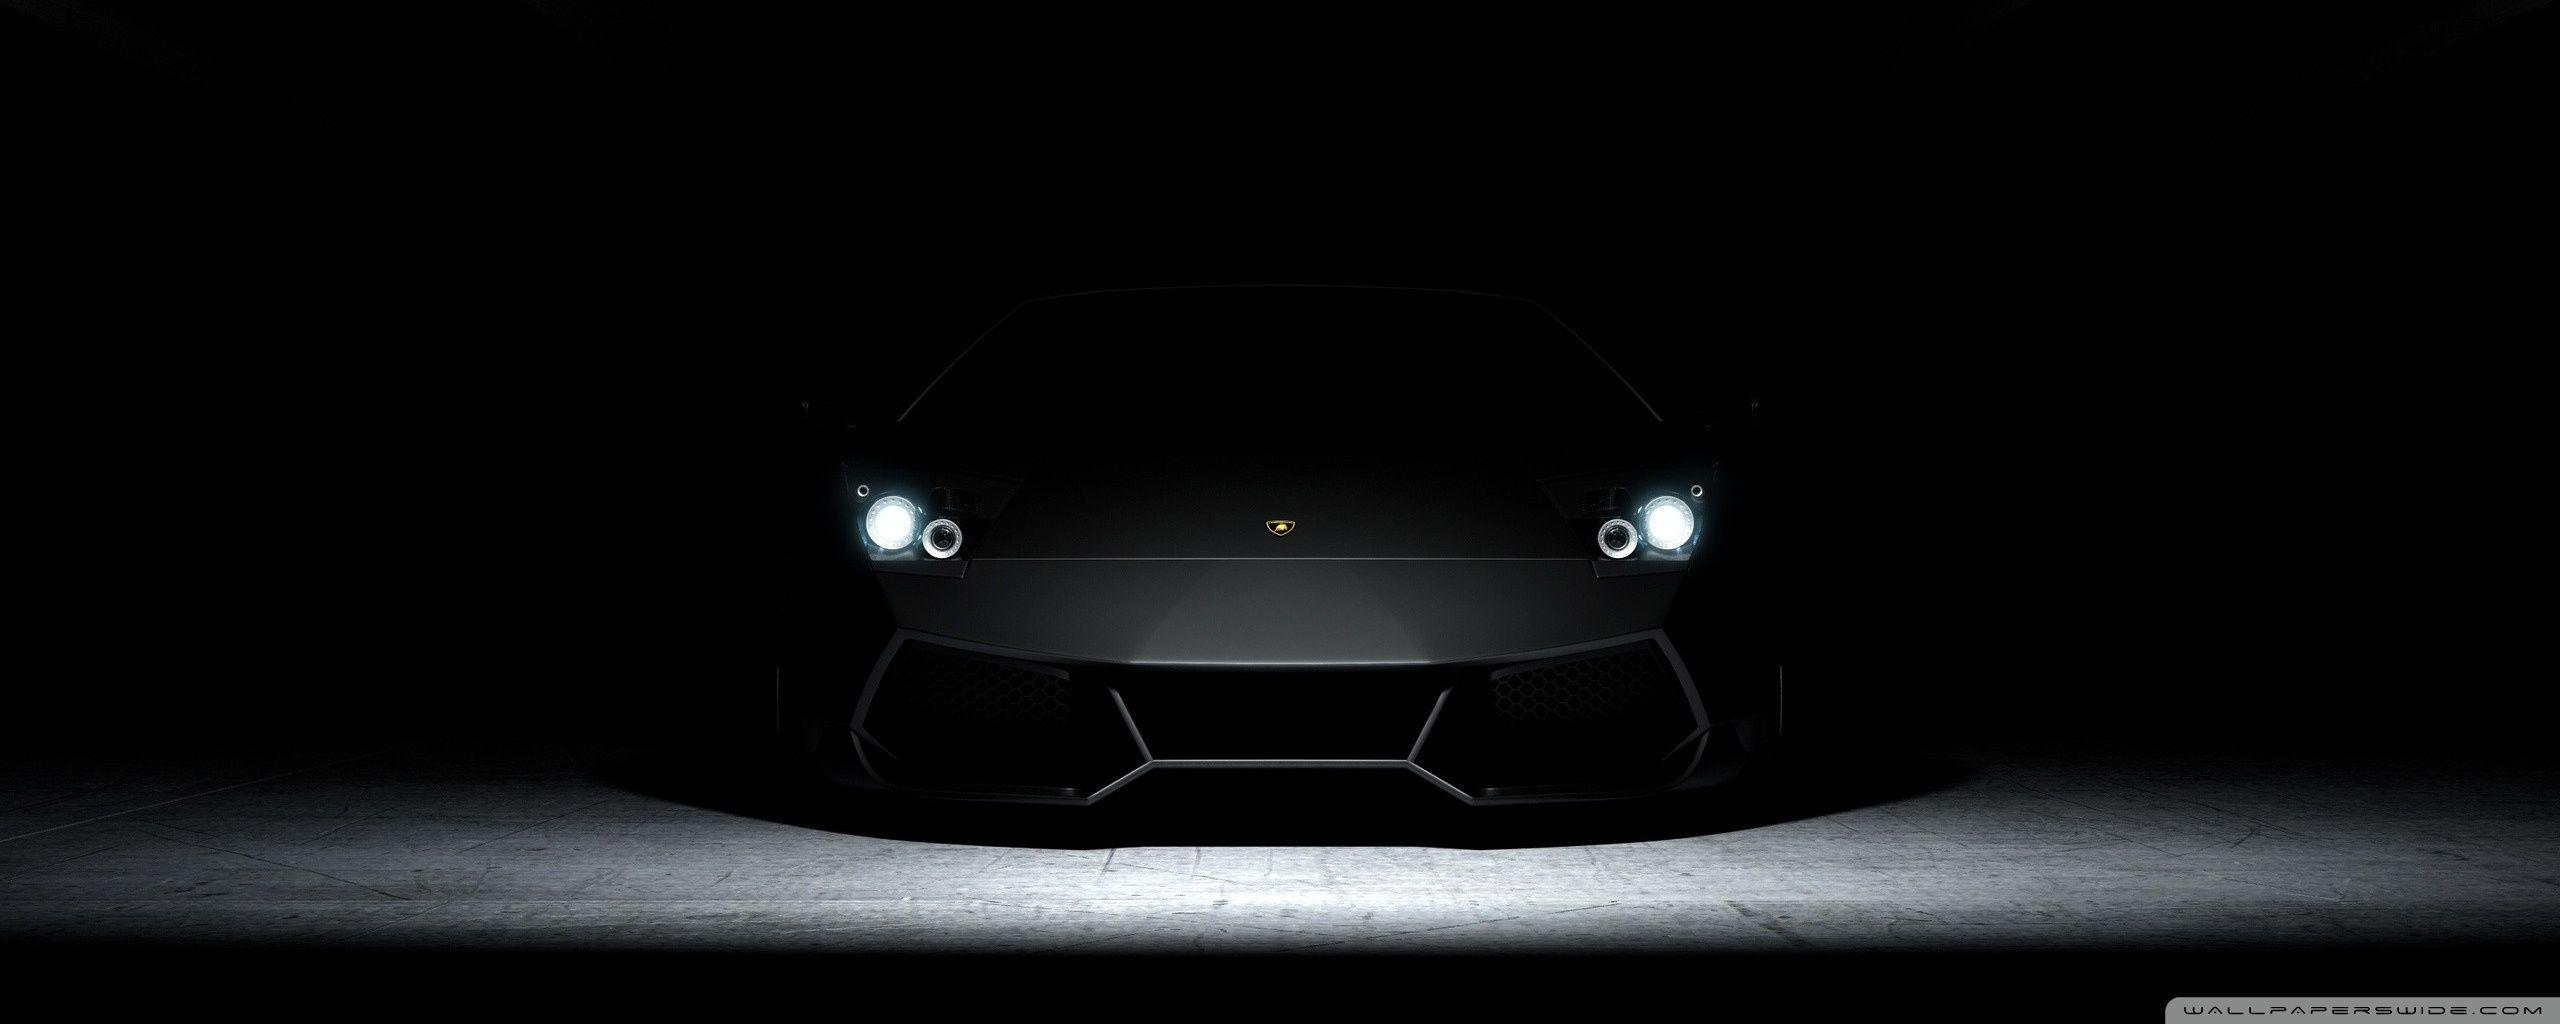 Matte Black Lamborghini Wallpapers - Top Free Matte Black Lamborghini  Backgrounds - WallpaperAccess